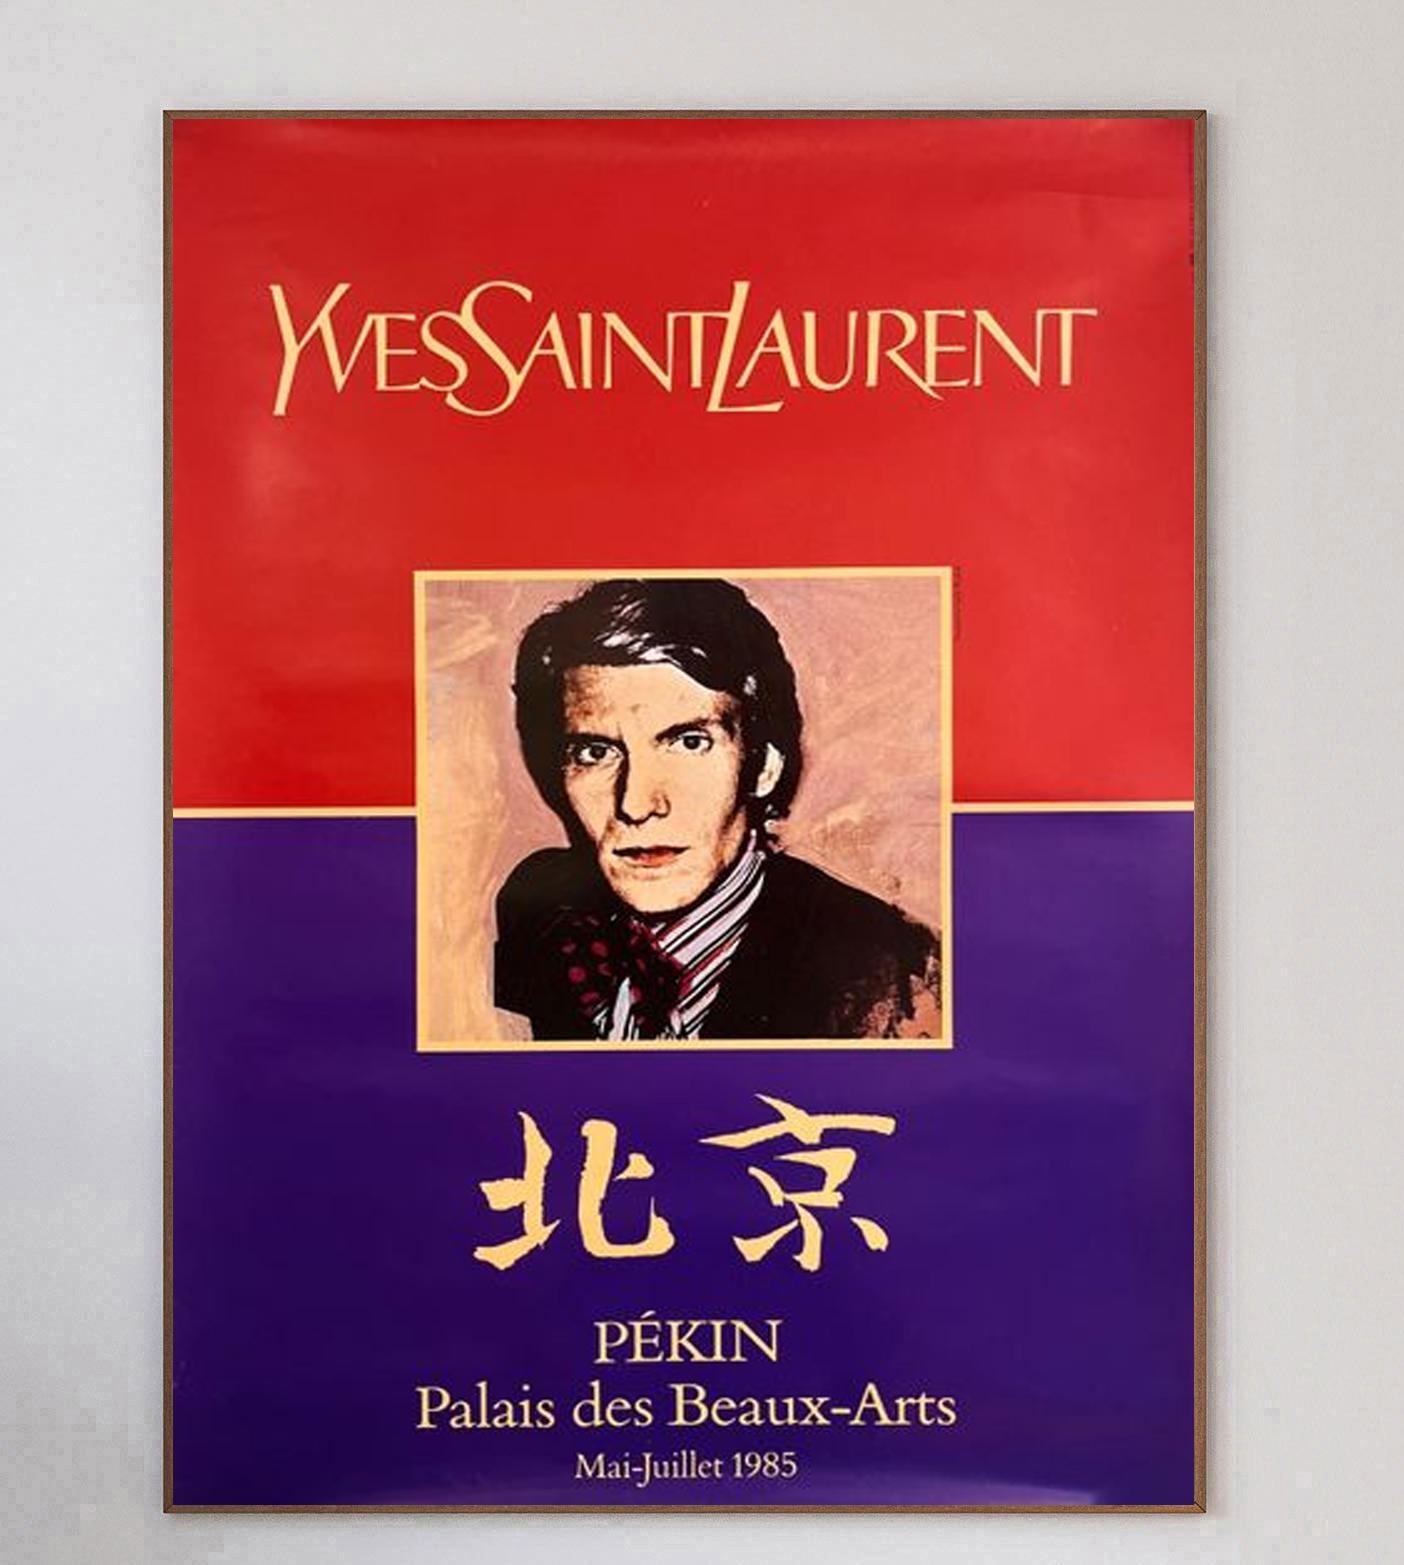 Magnifique affiche créée pour la promotion de la rétrospective des 25 ans d'Yves Saint Laurent au Palais des Beaux-Arts de Pékin, en Chine - ou Pekin comme on l'appelait autrefois. Ce poster vibrant avec de l'or présente un portrait de